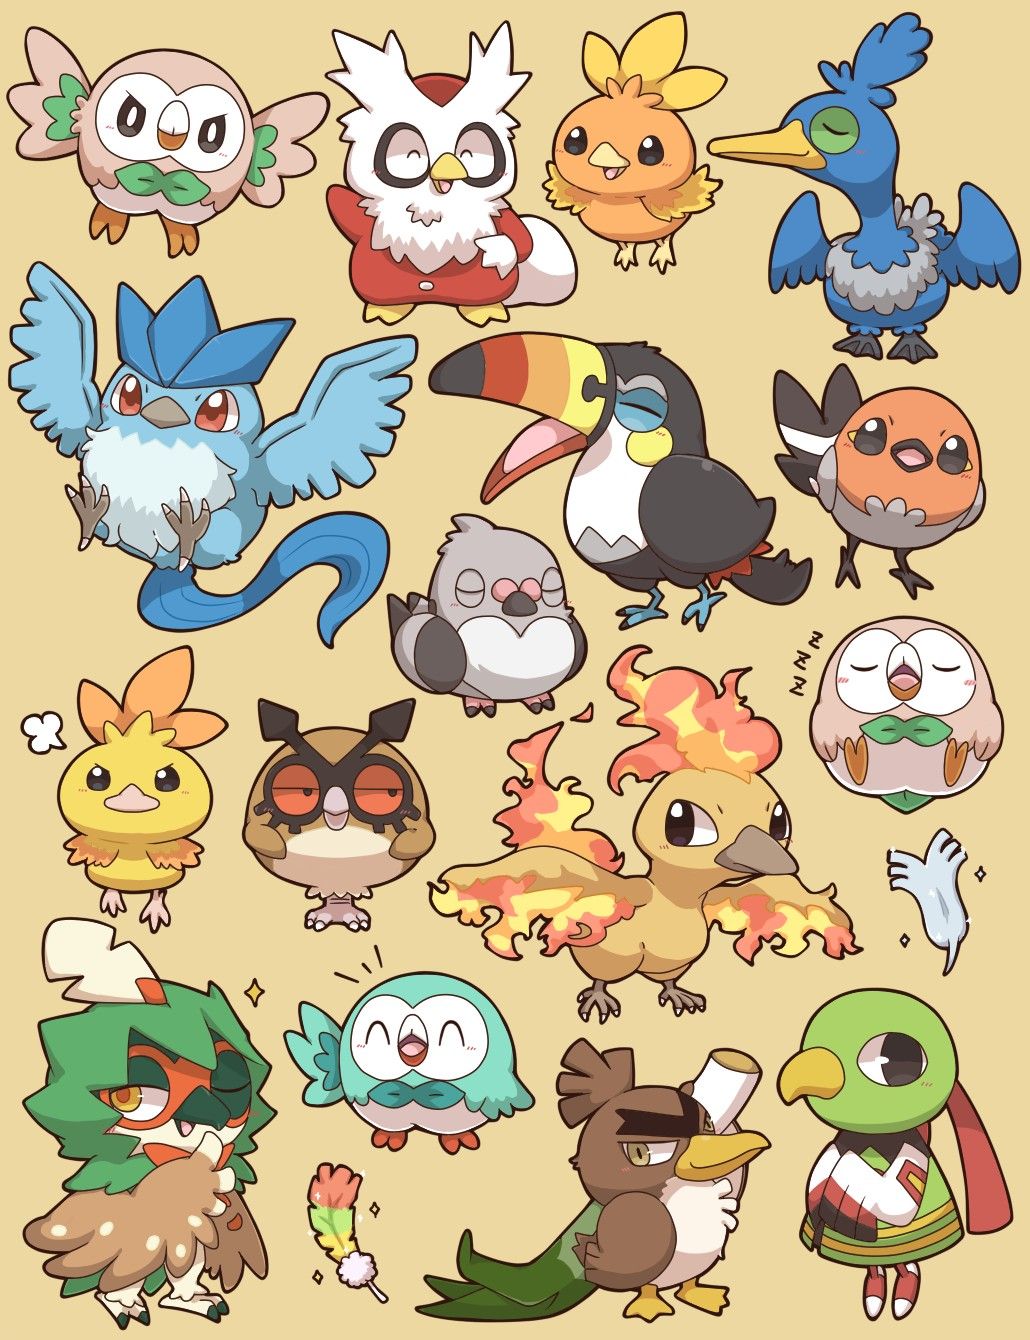 ポケモン. Cute pokemon wallpaper, Flying type pokemon, Pokemon